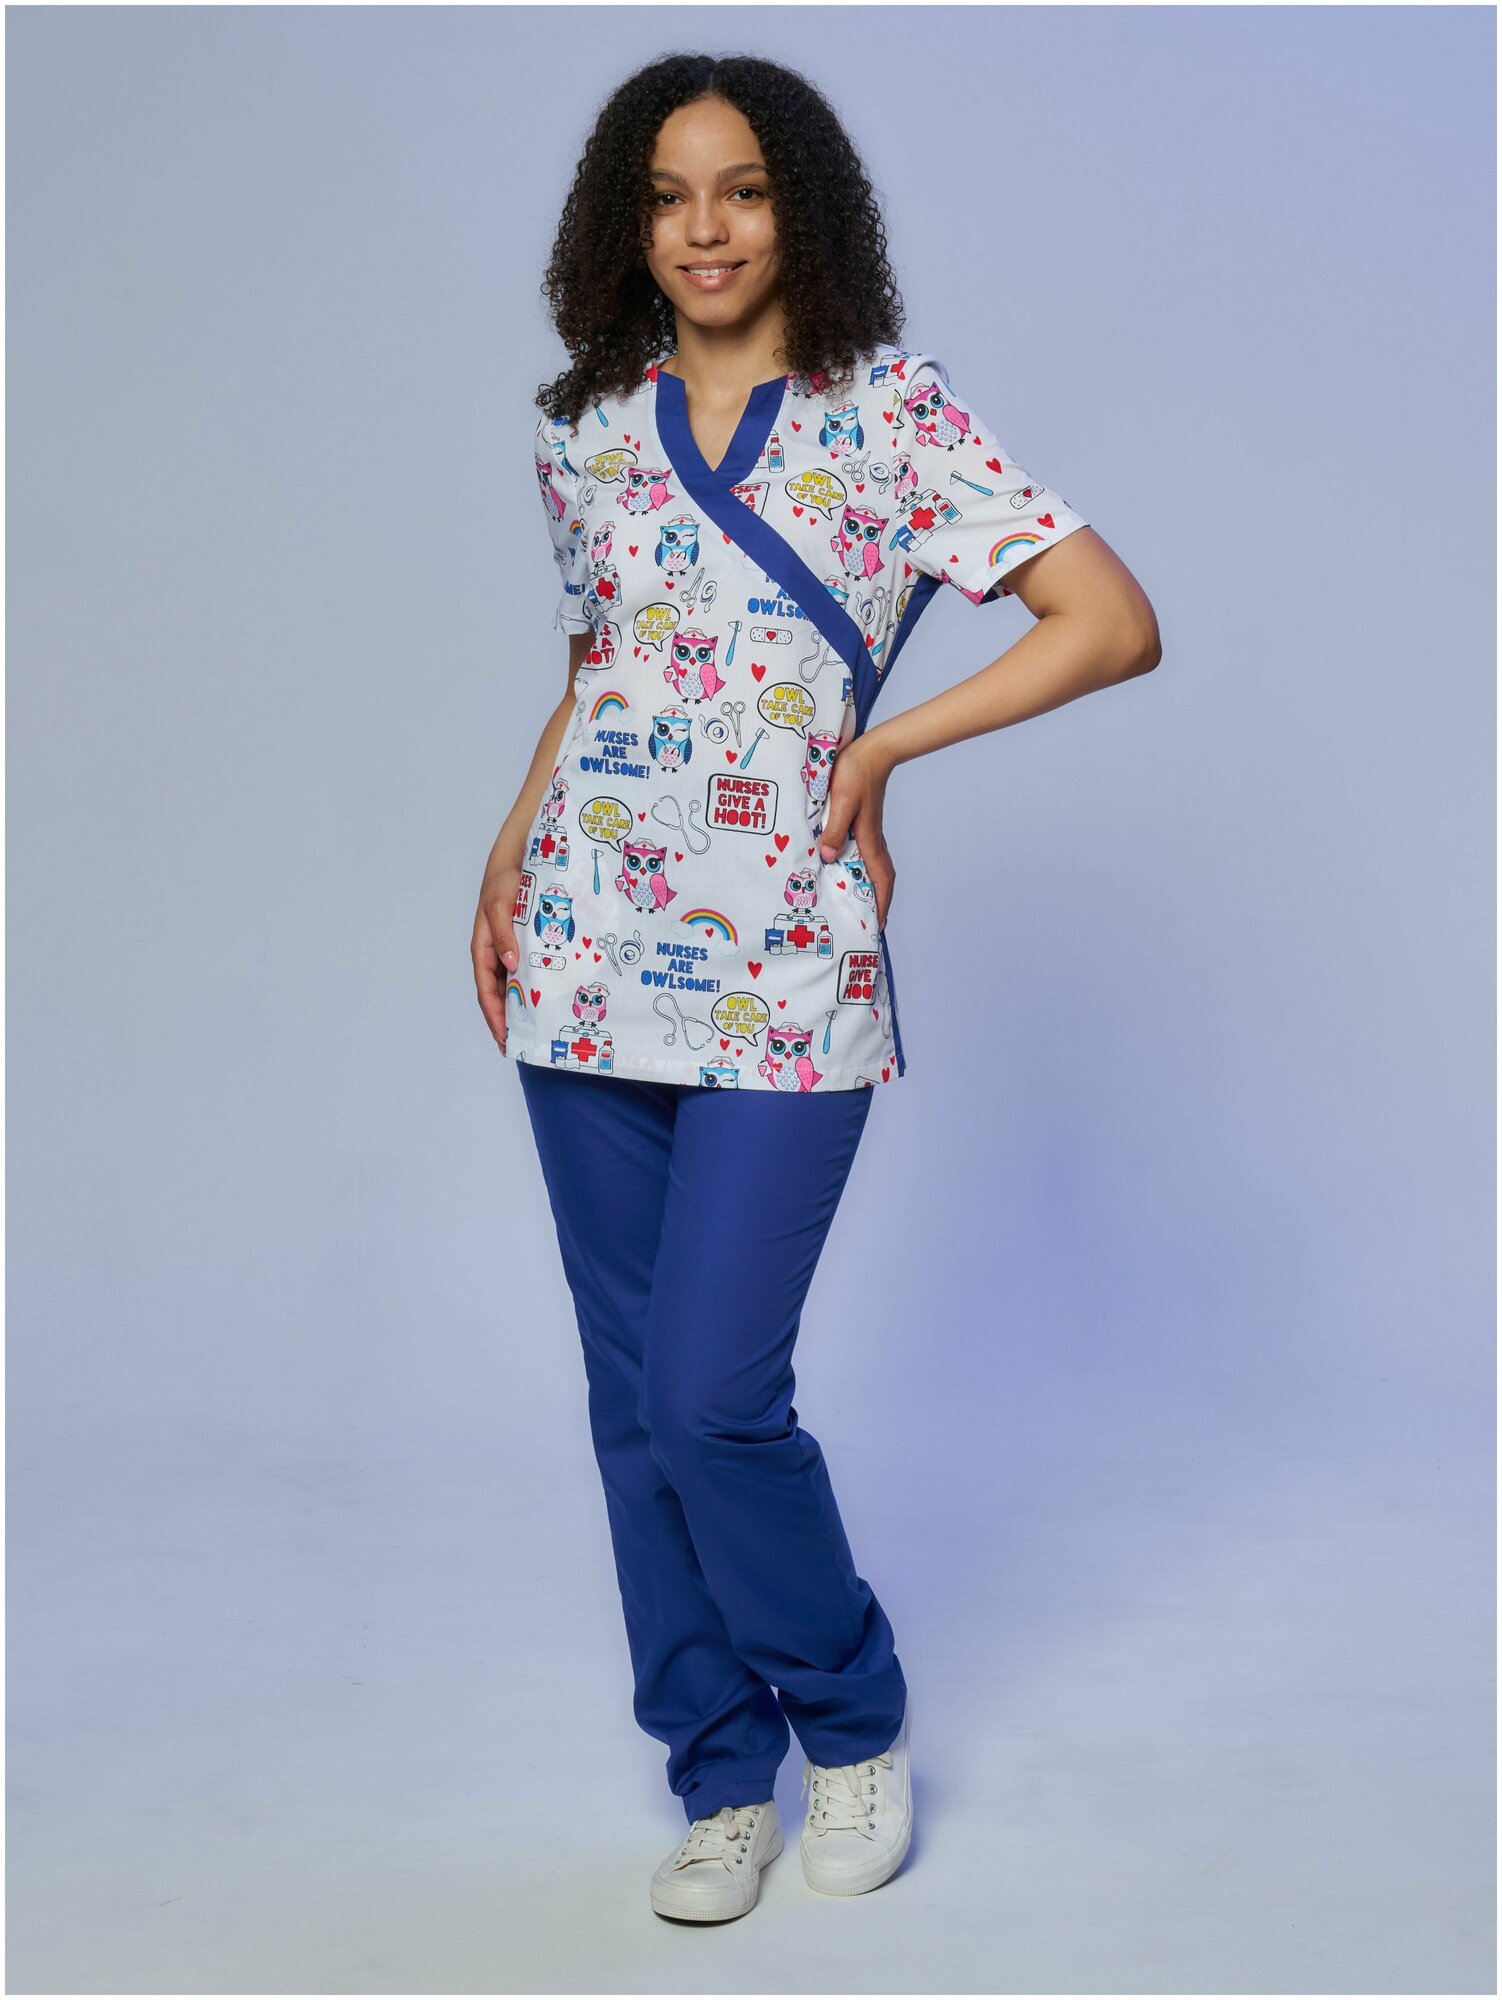 Медицинский костюм Альба-С женский с принтом синий. Хирургический костюм с рисунком голубой больших размеров. Спецодежда для женщин (блуза с брюками). Рабочий комплект одежды для врача. Размер 44